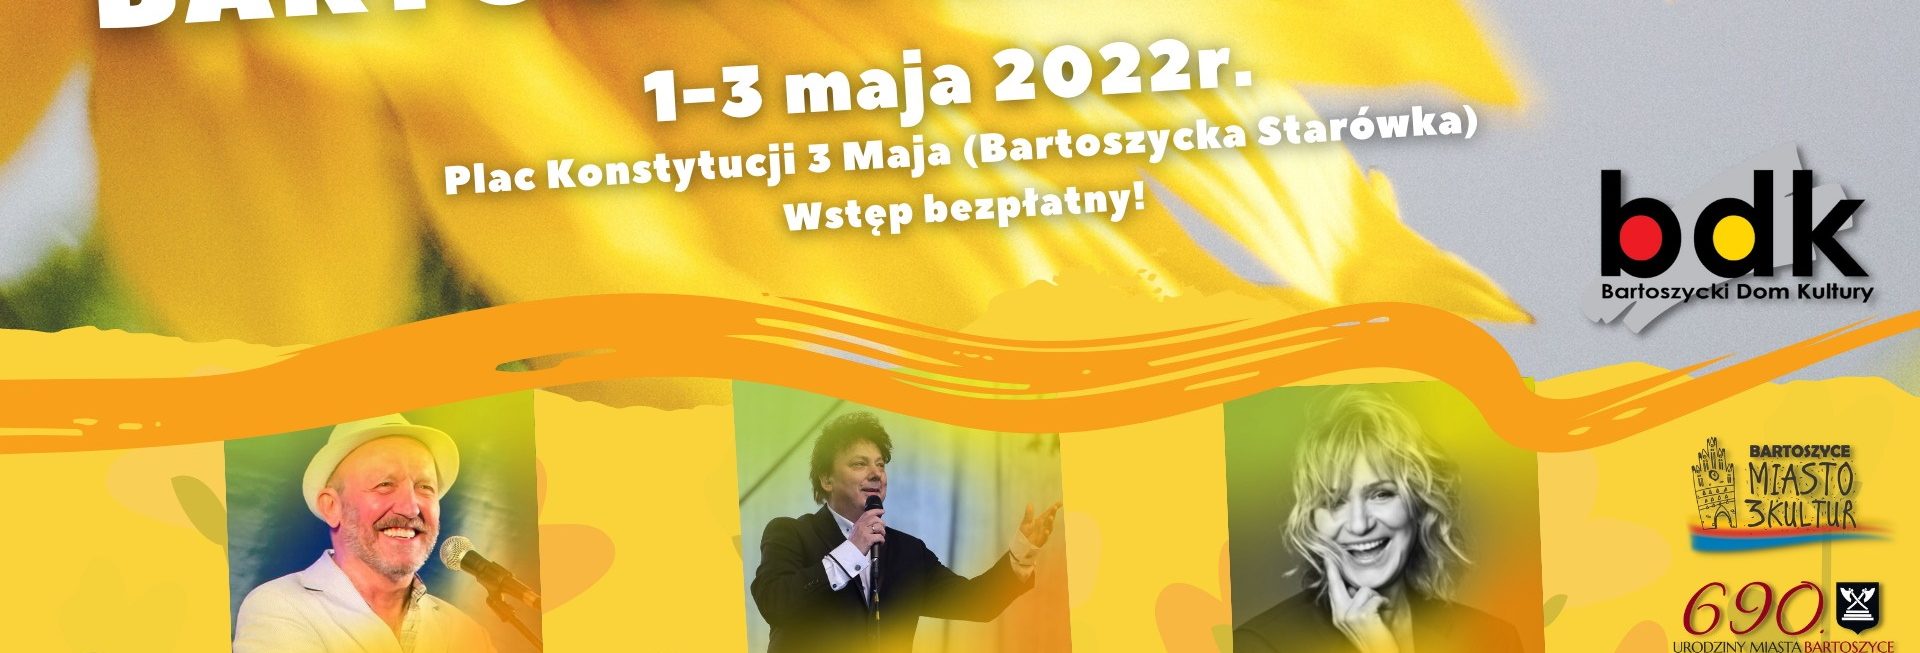 Plakat graficzny zapraszający do Bartoszyc na Bartoszycką Majówkę 2022.